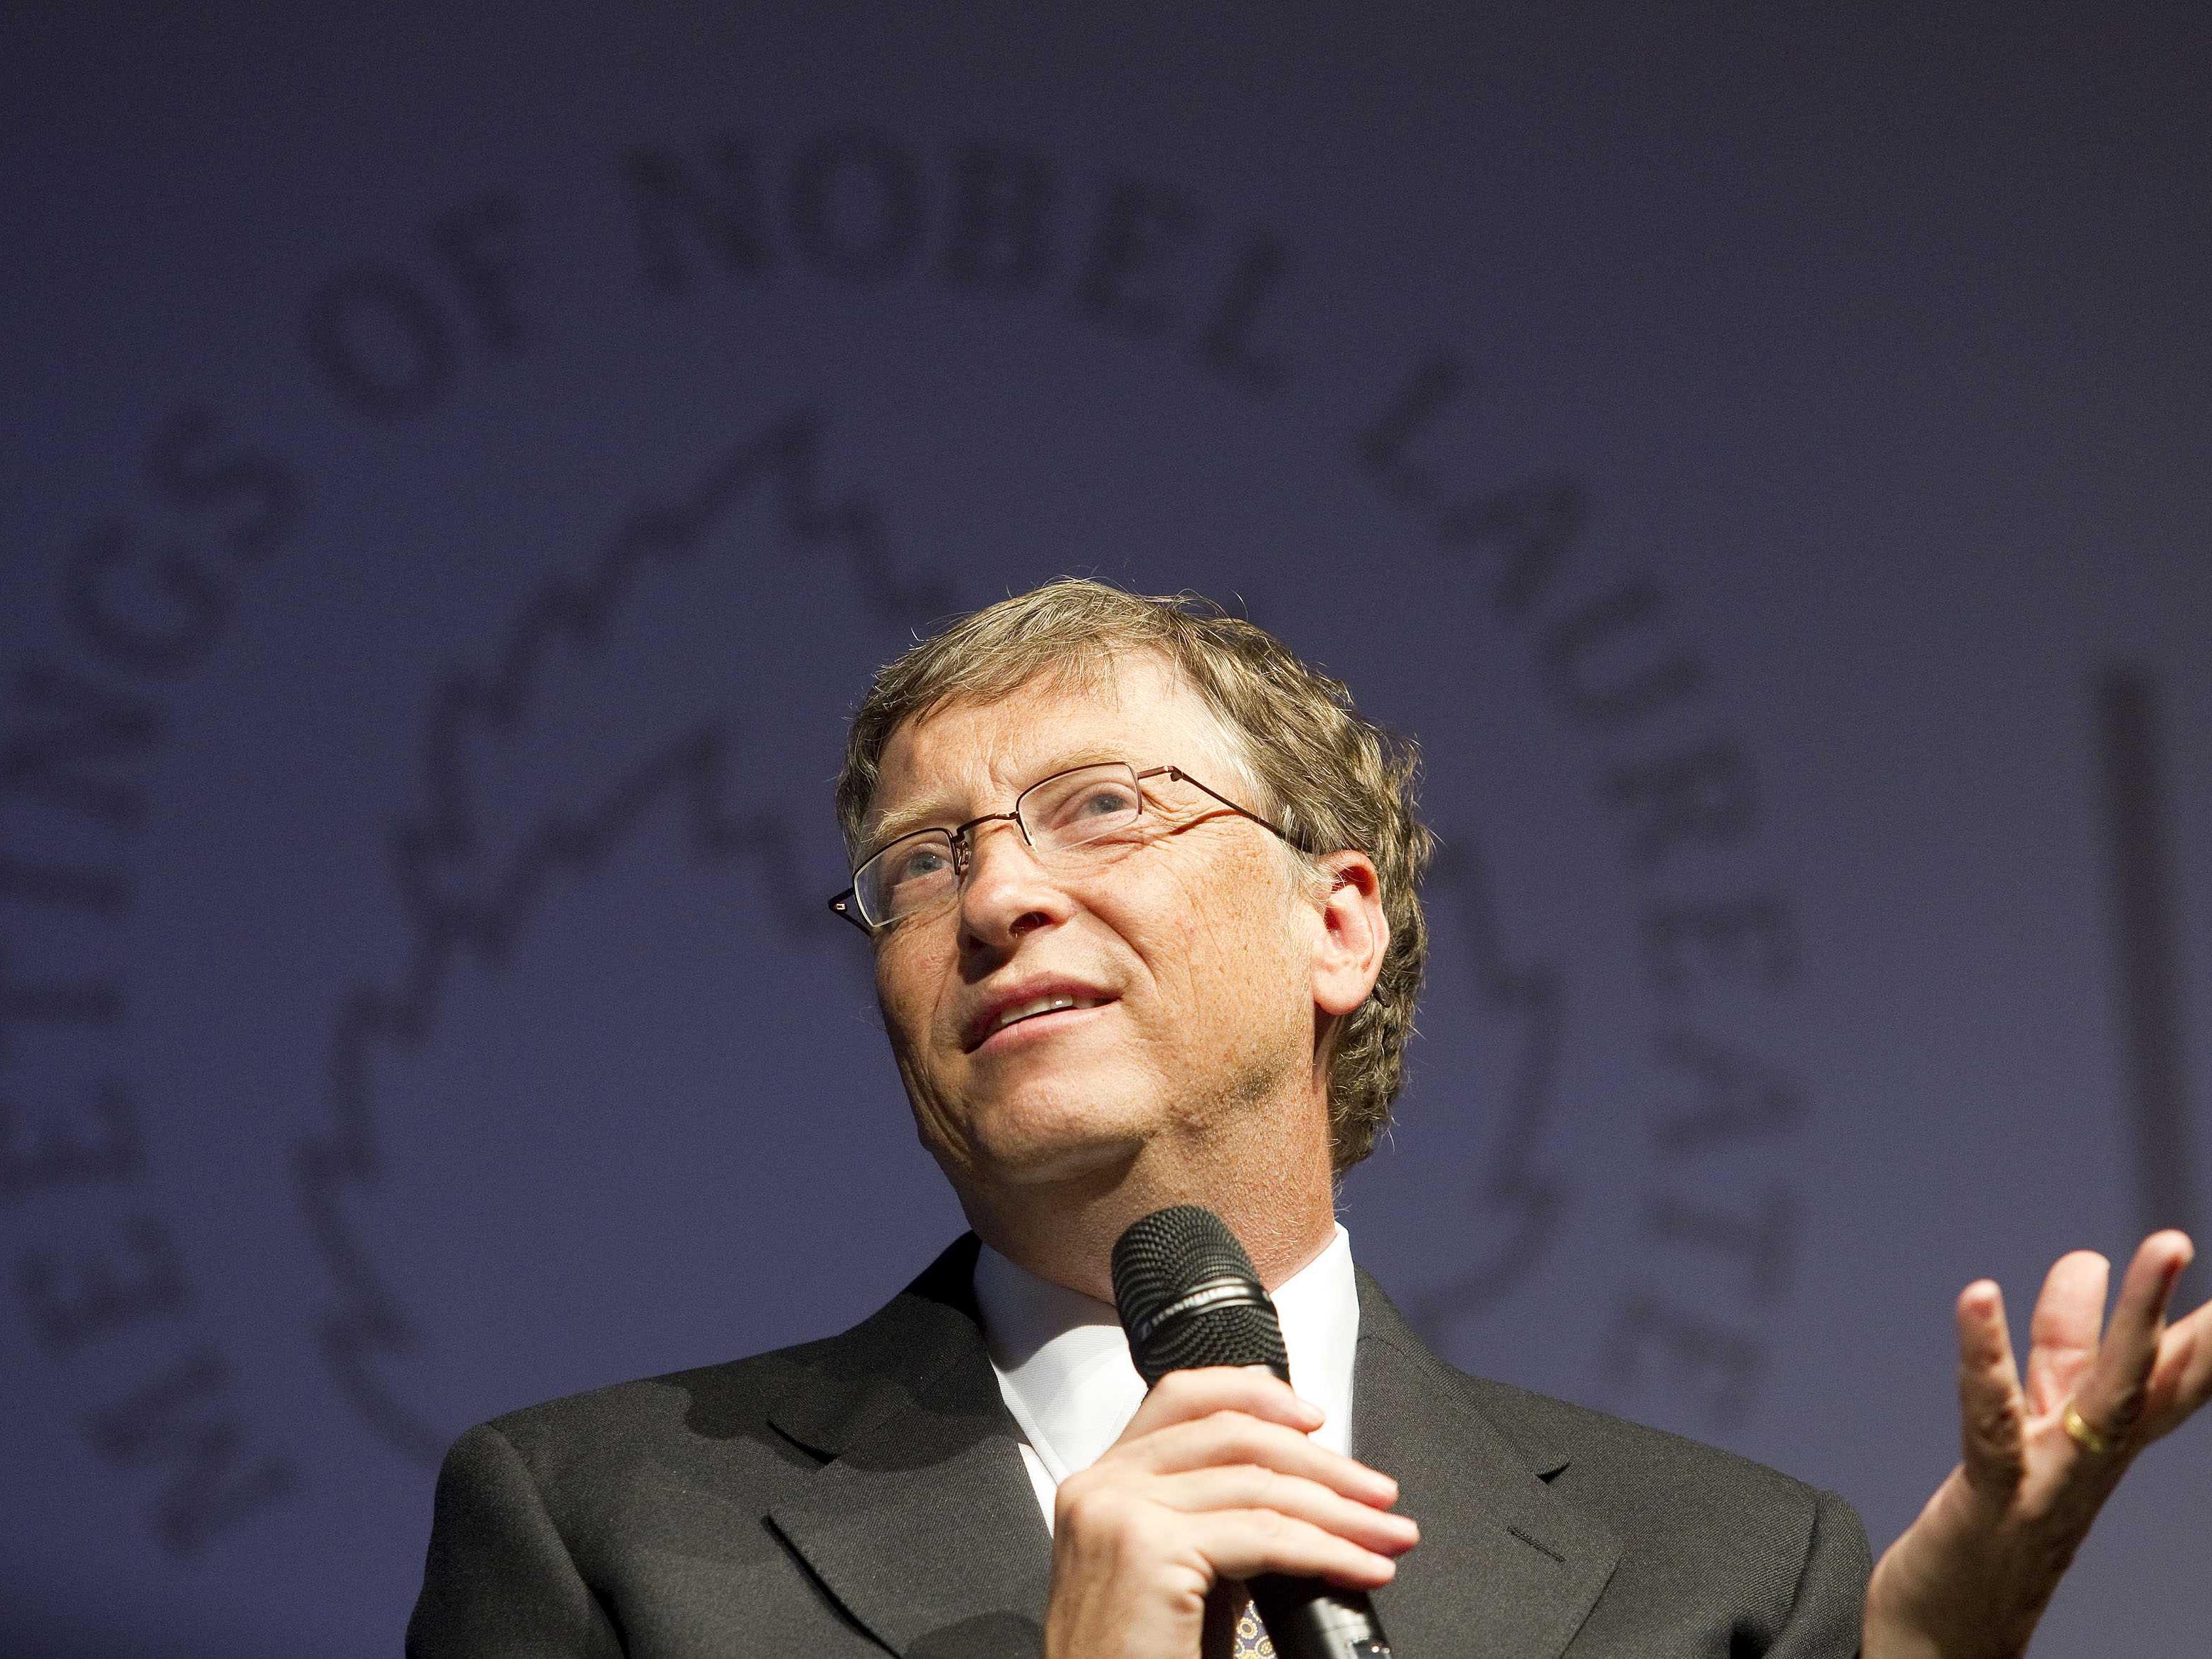 Milliardär und Philantrop Bill Gates sprach (auch ohne Nobelpreis) bei der 61. Nobelpreisträgertagung in Lindau.